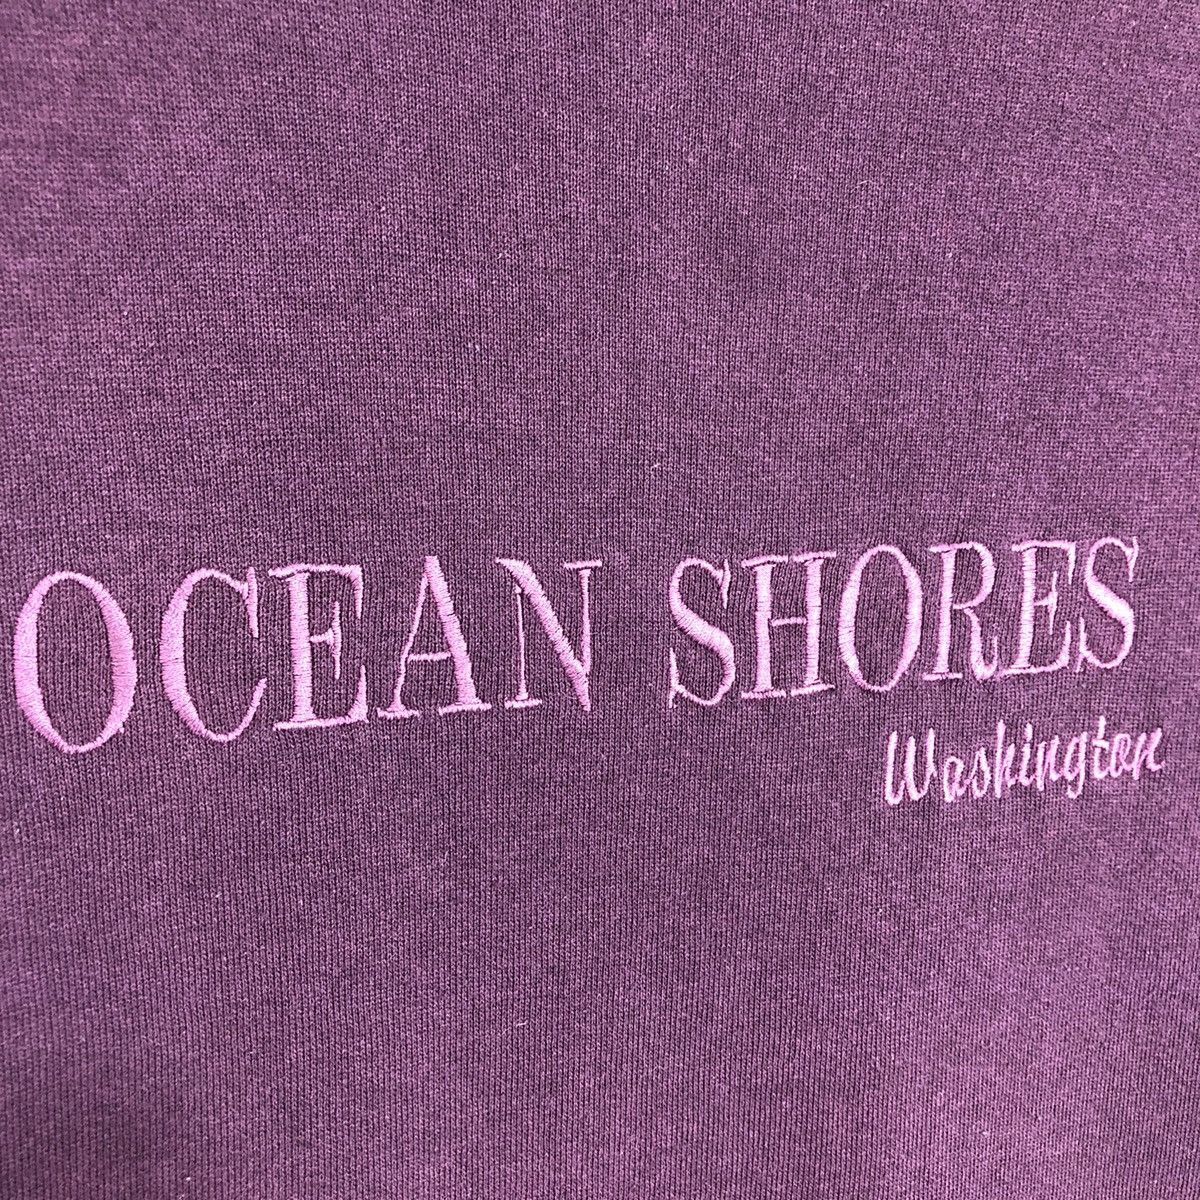 Vintage Ocean Shores Washington Crewneck Sweatshirt - 4